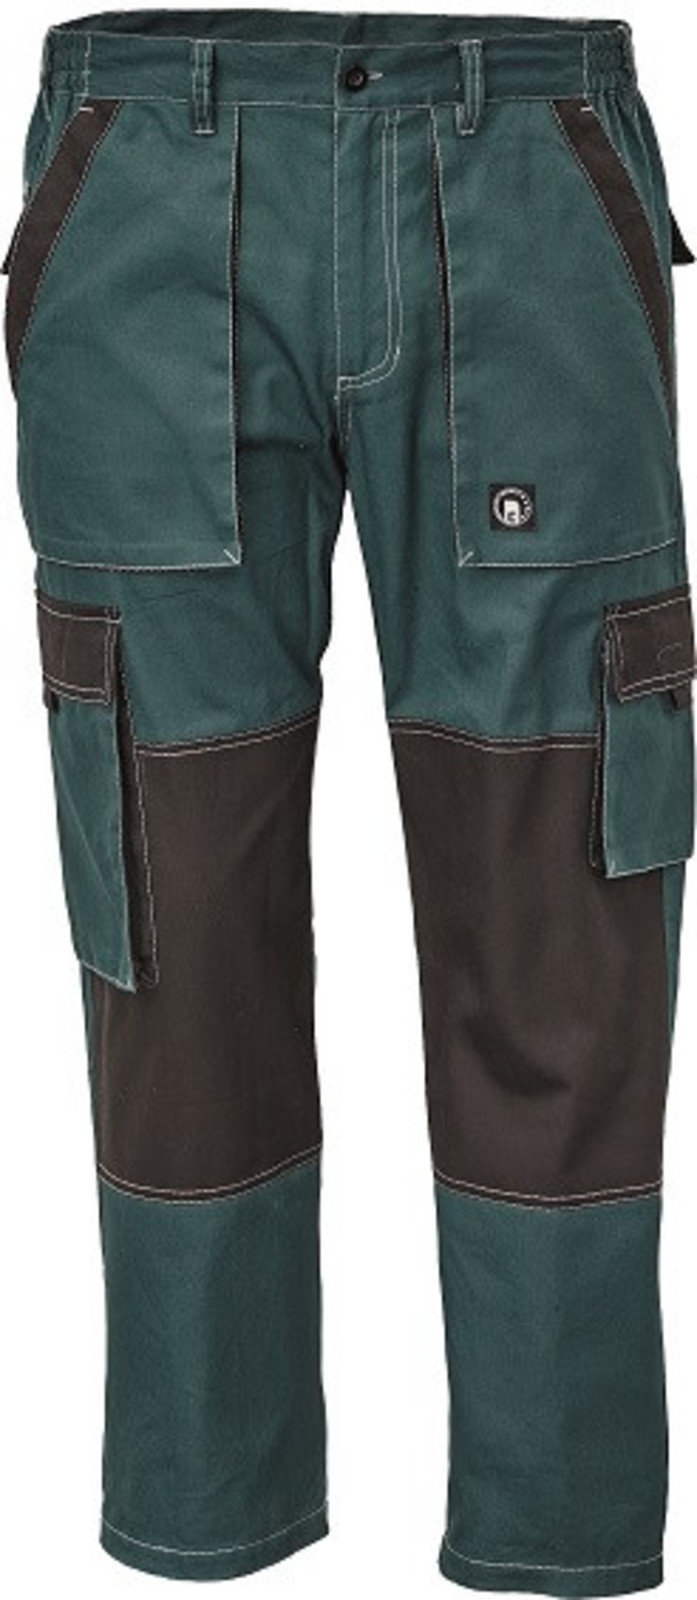 Tenšie bavlnené montérky Max Summer - veľkosť: 52, farba: zelená/čierna